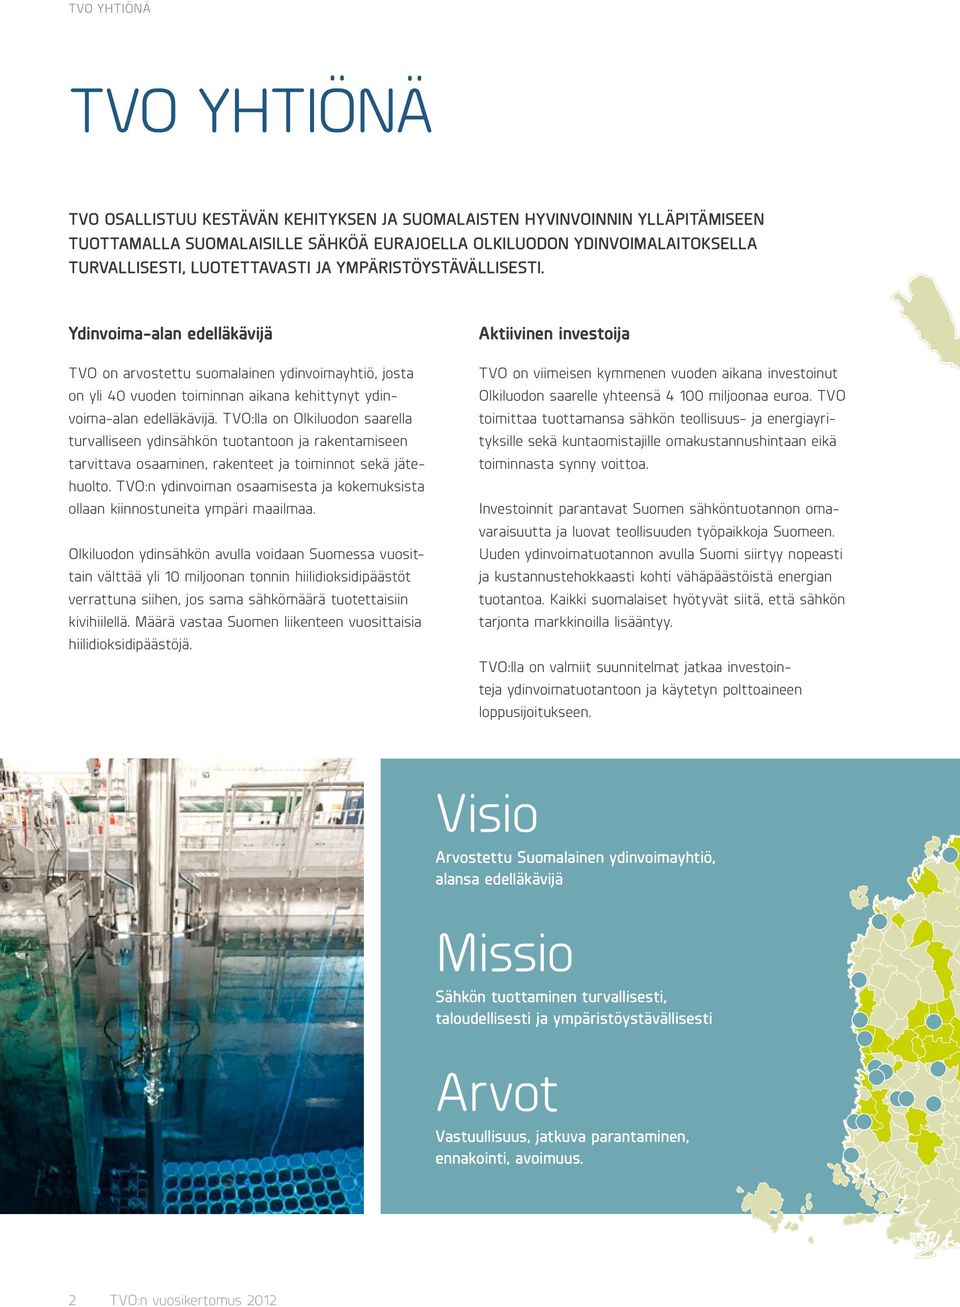 TVO:lla on Olkiluodon saarella turvalliseen ydinsähkön tuotantoon ja rakentamiseen tarvittava osaaminen, rakenteet ja toiminnot sekä jätehuolto.